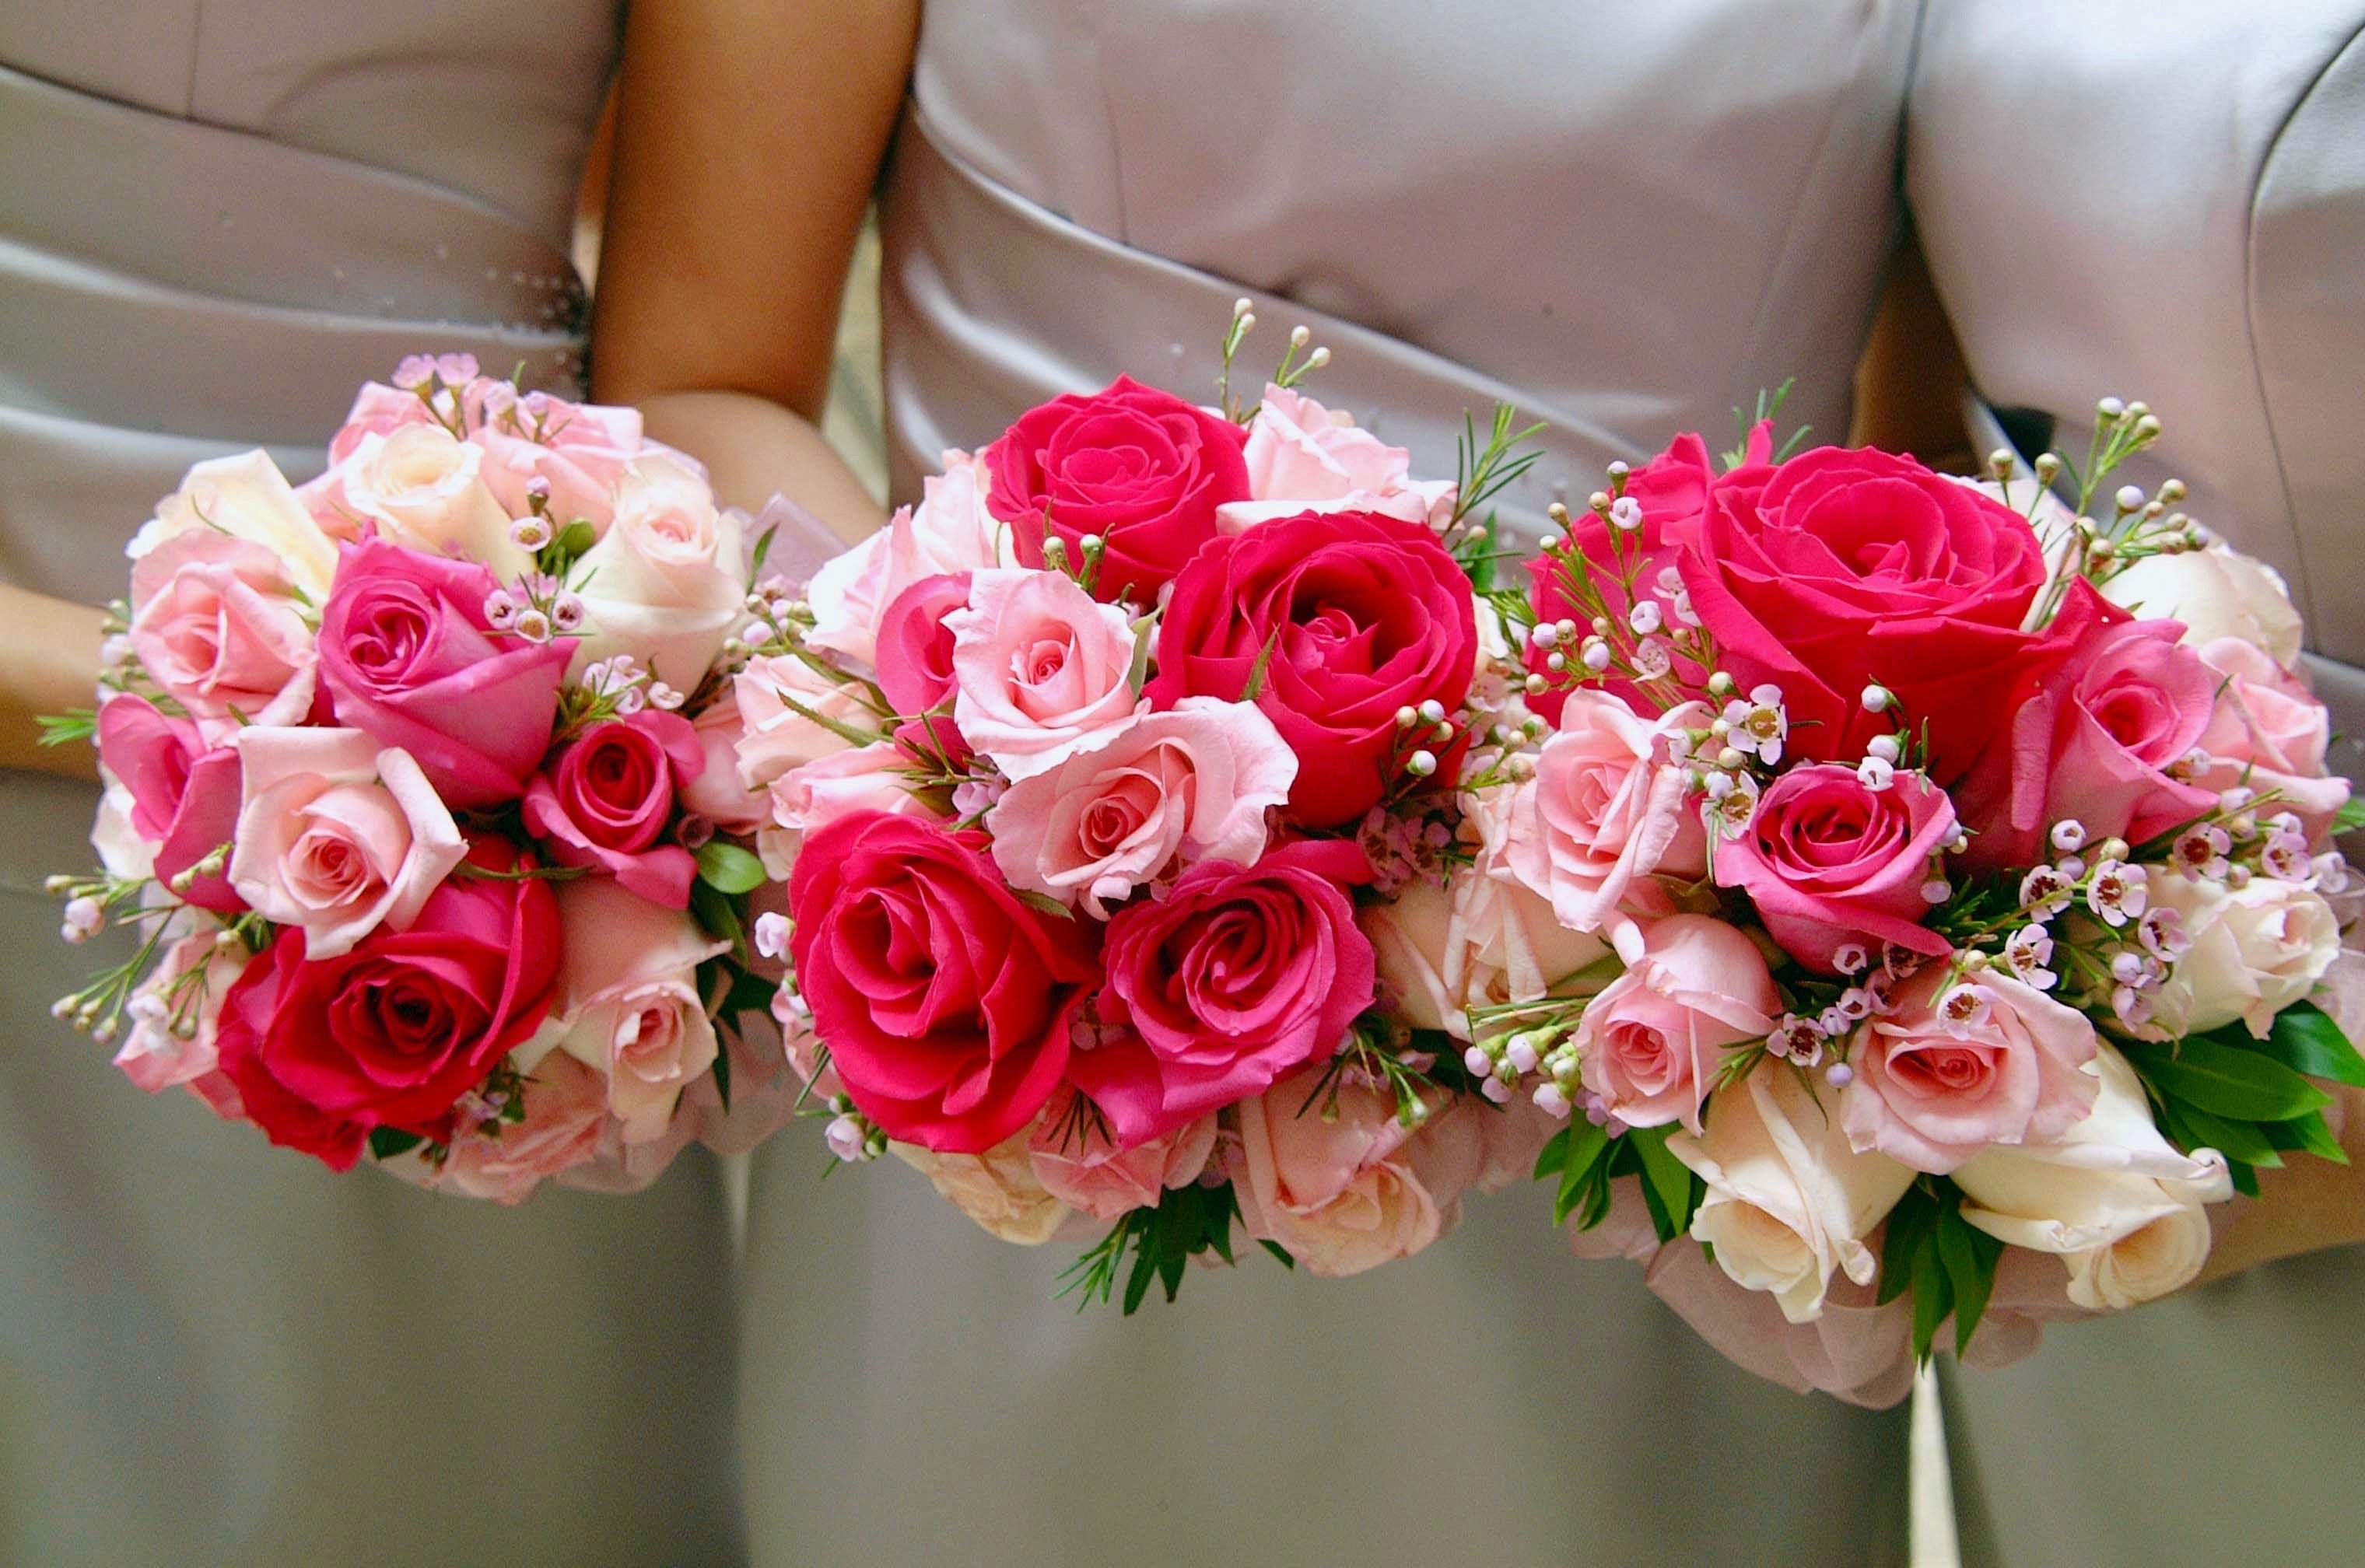 Bridesmaids holding gorgeous bouquets | Photo: Pexels